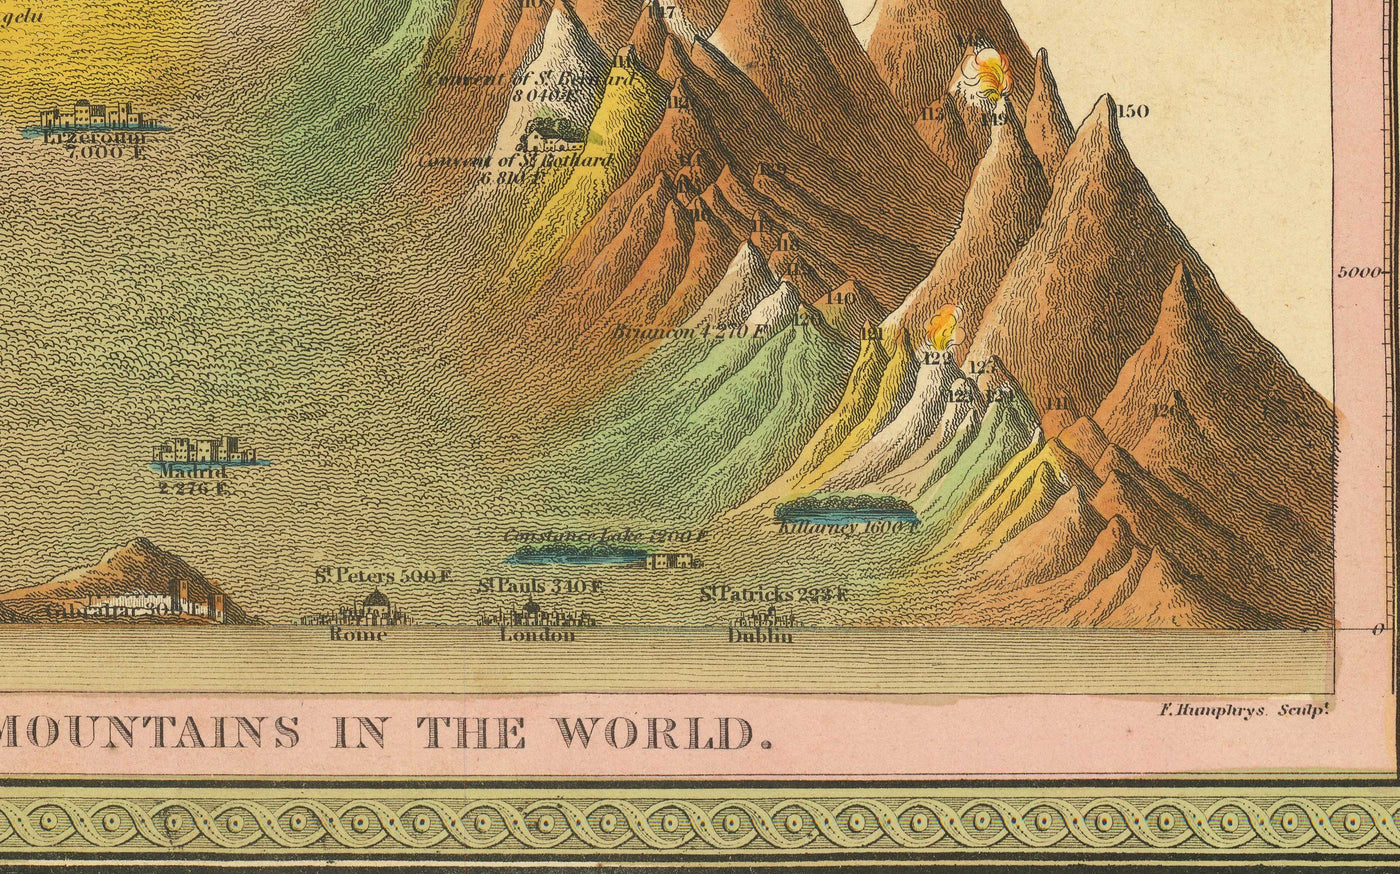 Alte Karte der Flüsse und Berge der Welt, 1849 von Samuel Augustus Mitchell - Nil, Mississippi, Mount Sorato, Mount Blanc, kein Mount Everest